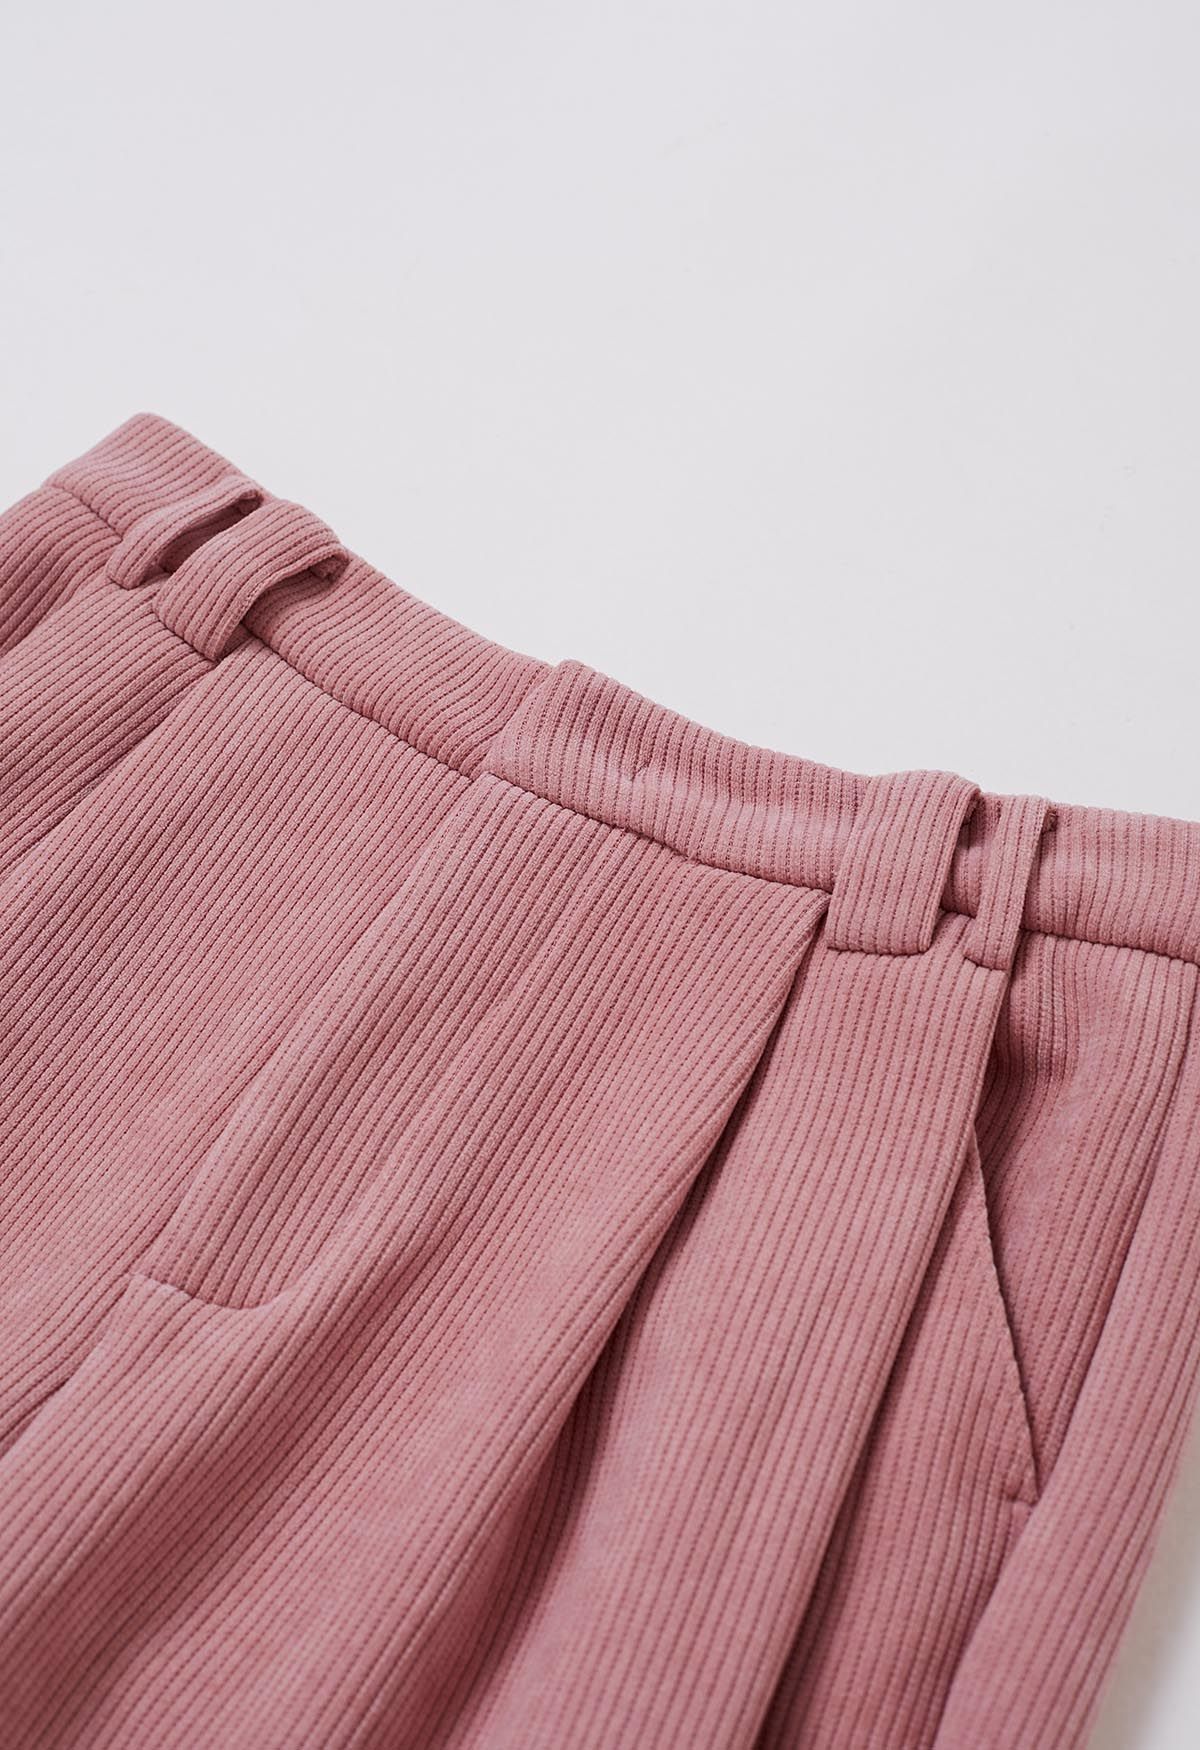 سروال قصير مبطن بالصوف وحزام بأرجل مستقيمة باللون الوردي